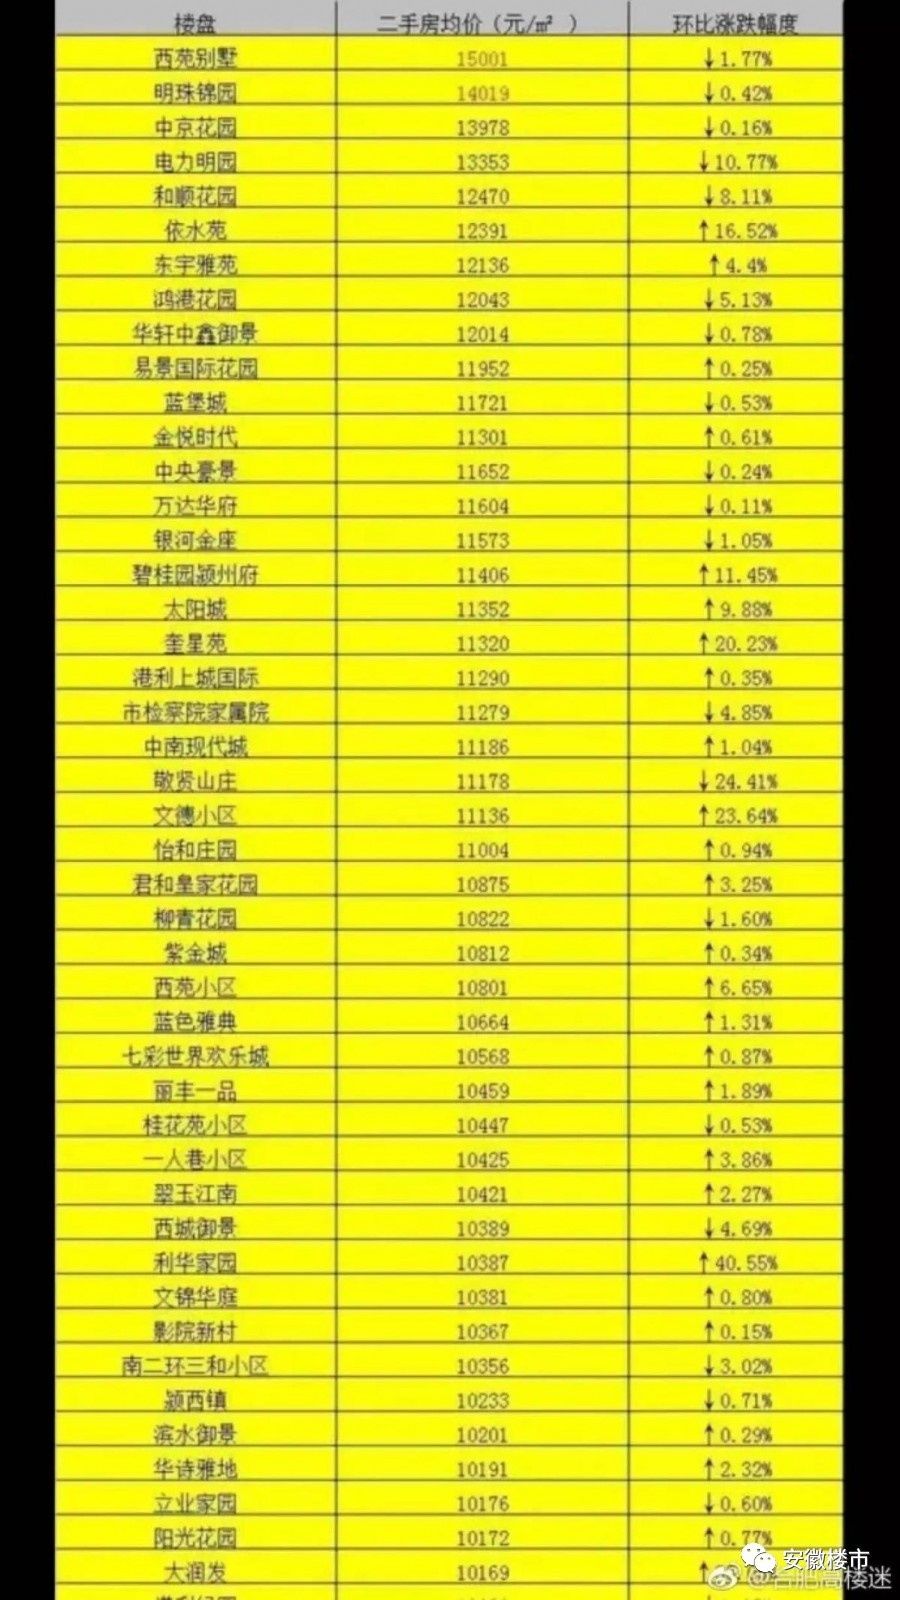 震惊!安徽阜阳房价最高破2万了!蒙城1.2万!蚌埠